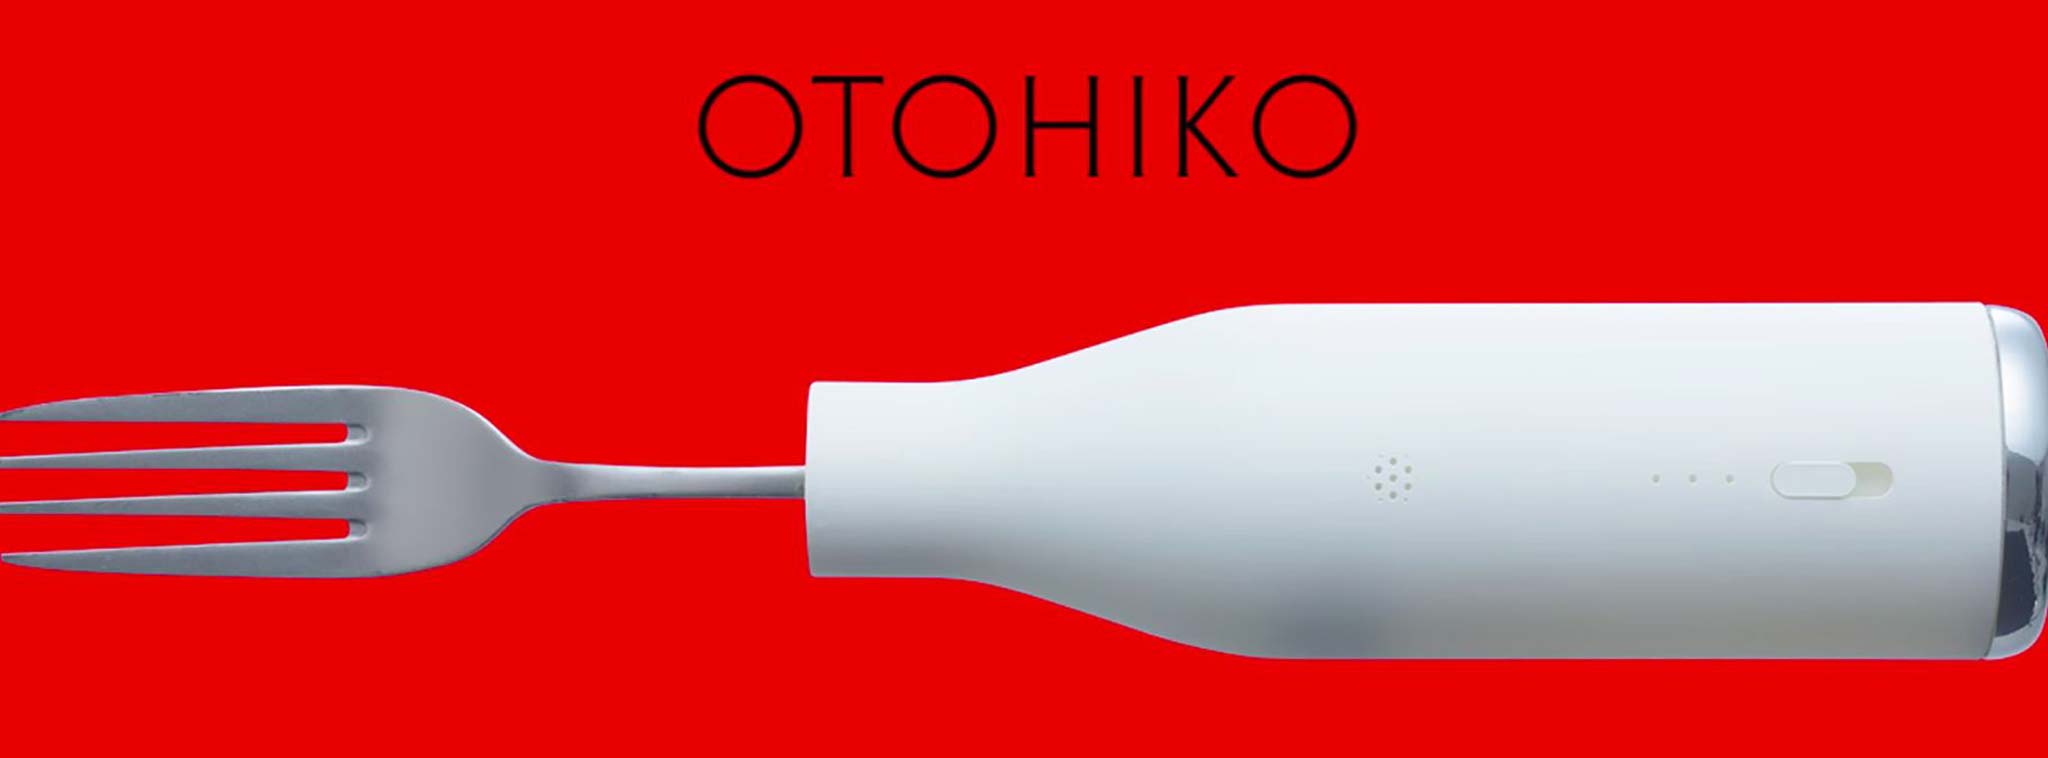 Nissin Otohiko: nĩa thông minh chống tiếng xì xụp khi ăn mì